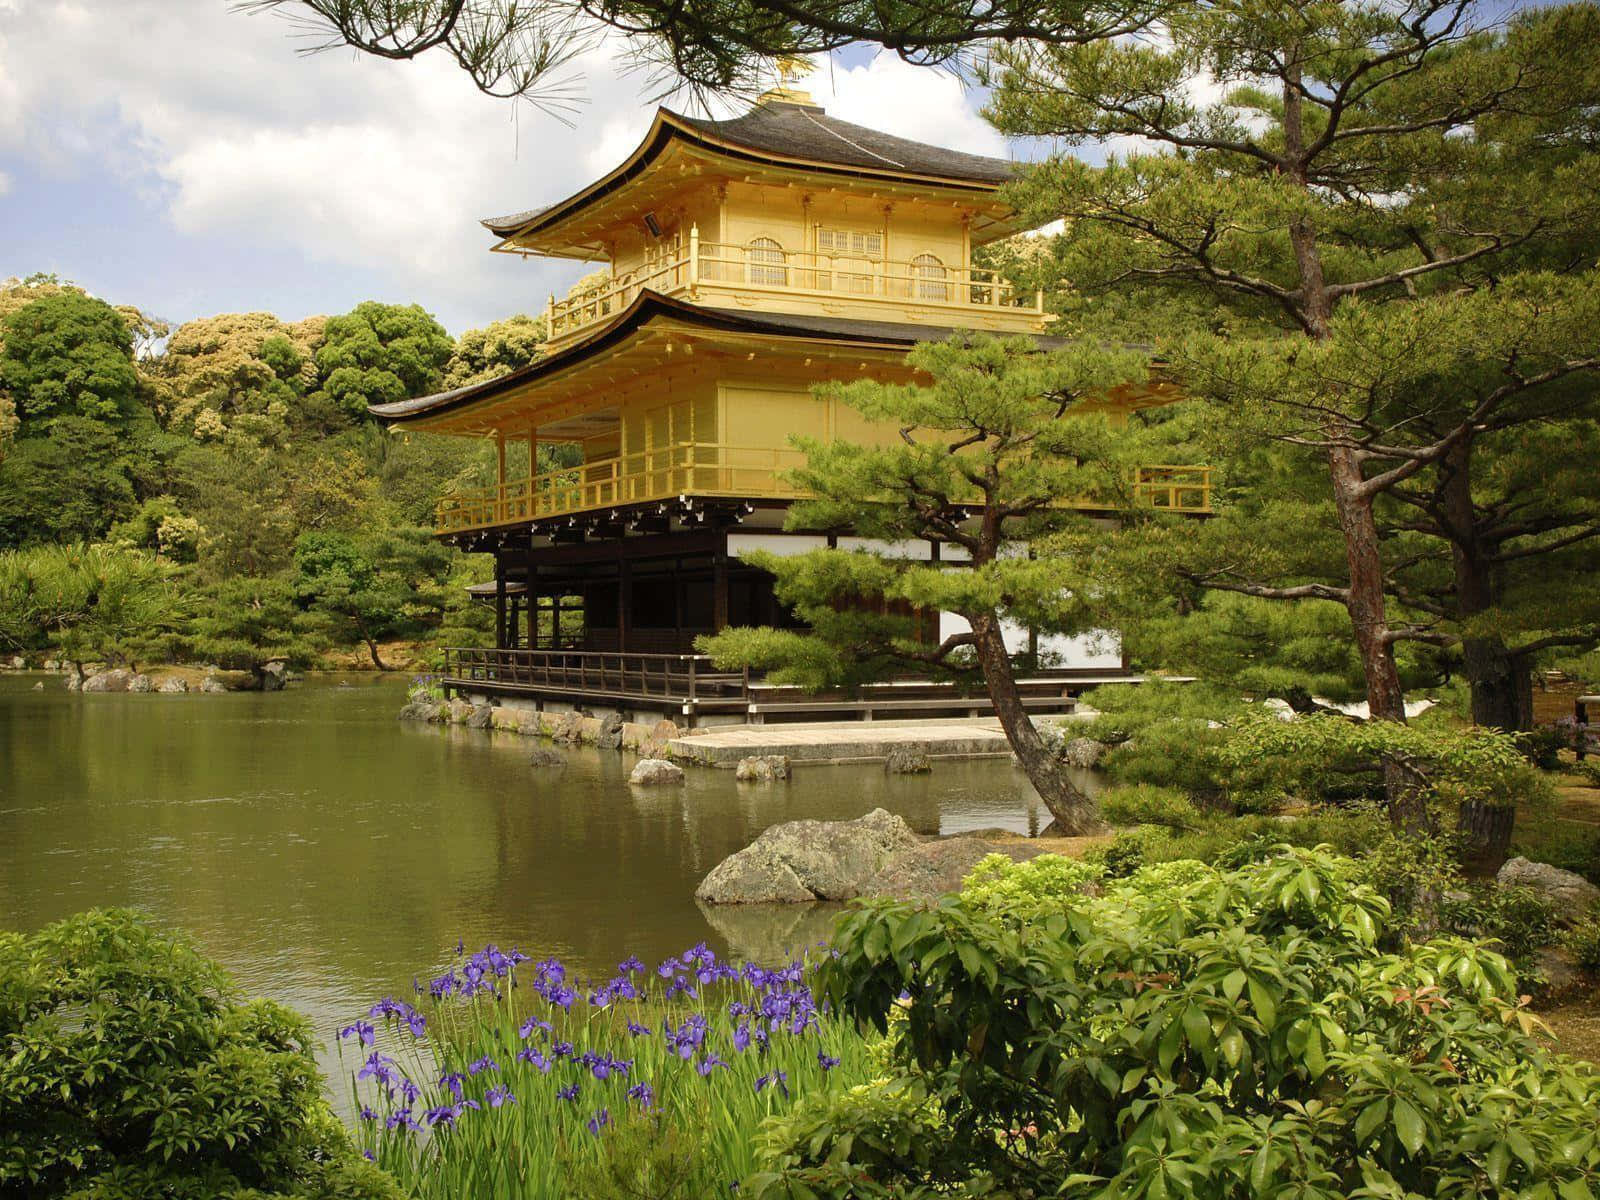 Viajaa Japón Y Explora Su Belleza Fondo de pantalla